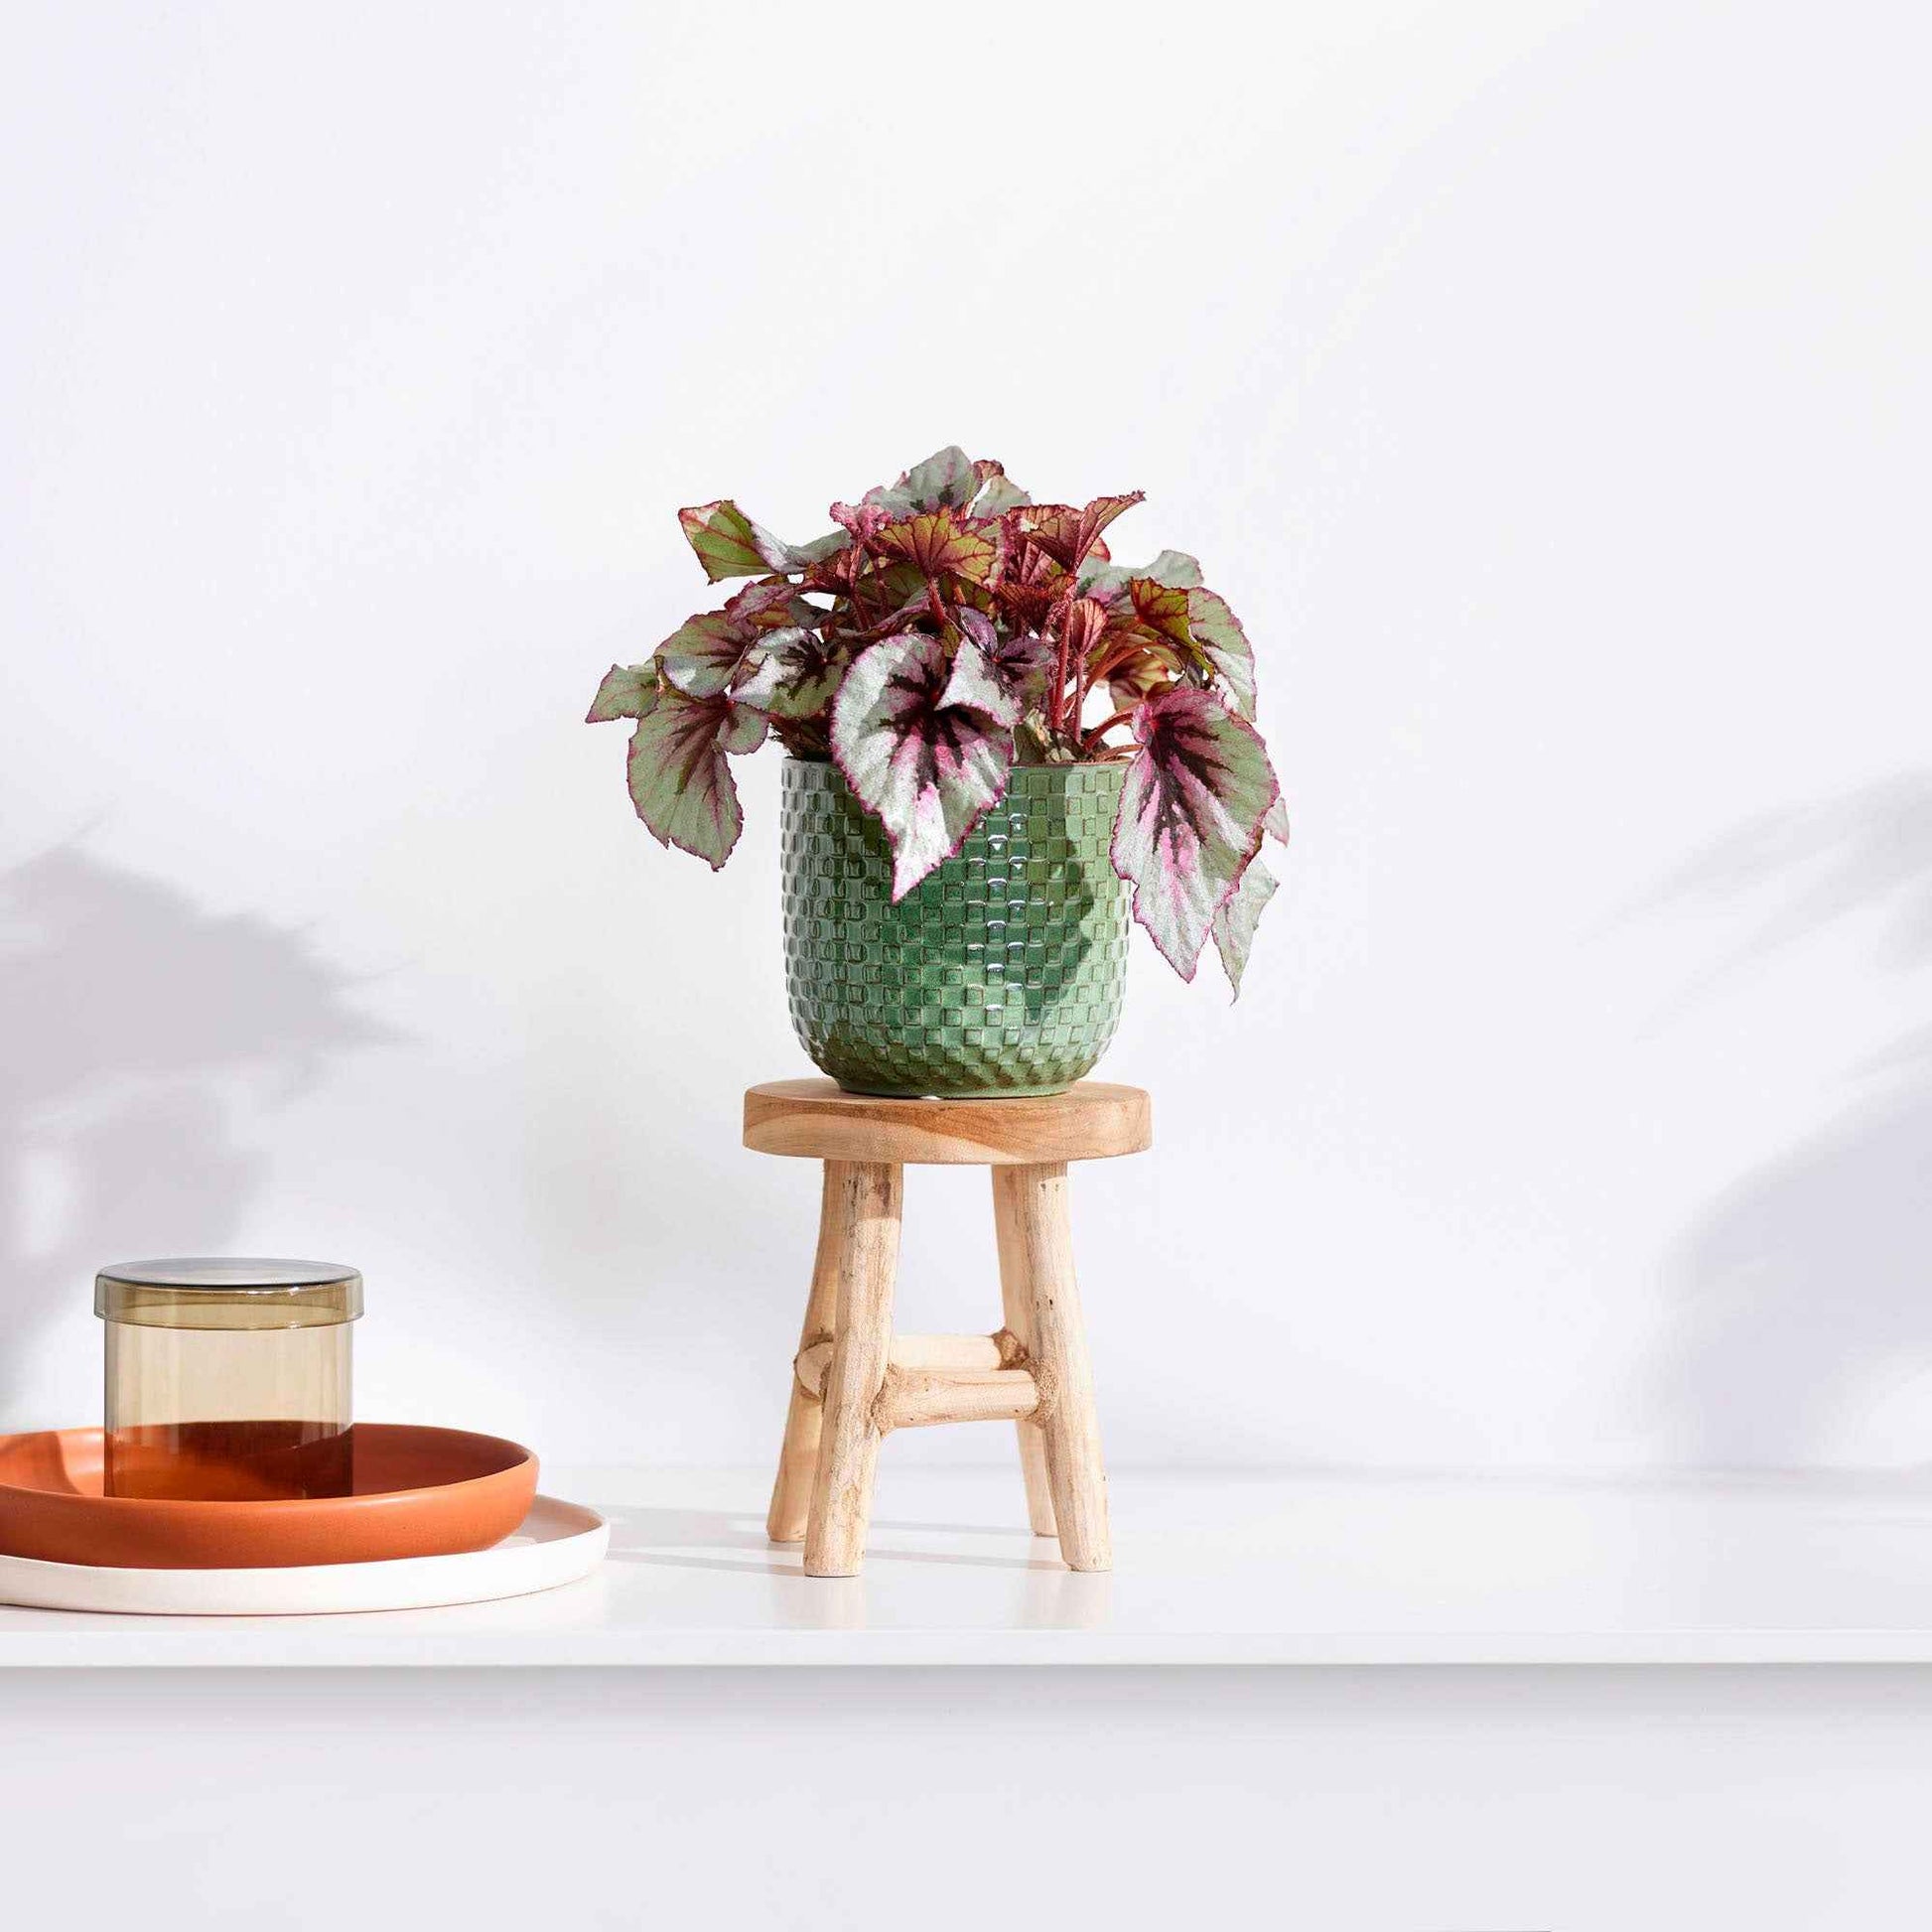 Bégonia Begonia 'Asian Tundra' avec pot décoratif et tabouret - Plantes d'intérieur : les tendances actuelles